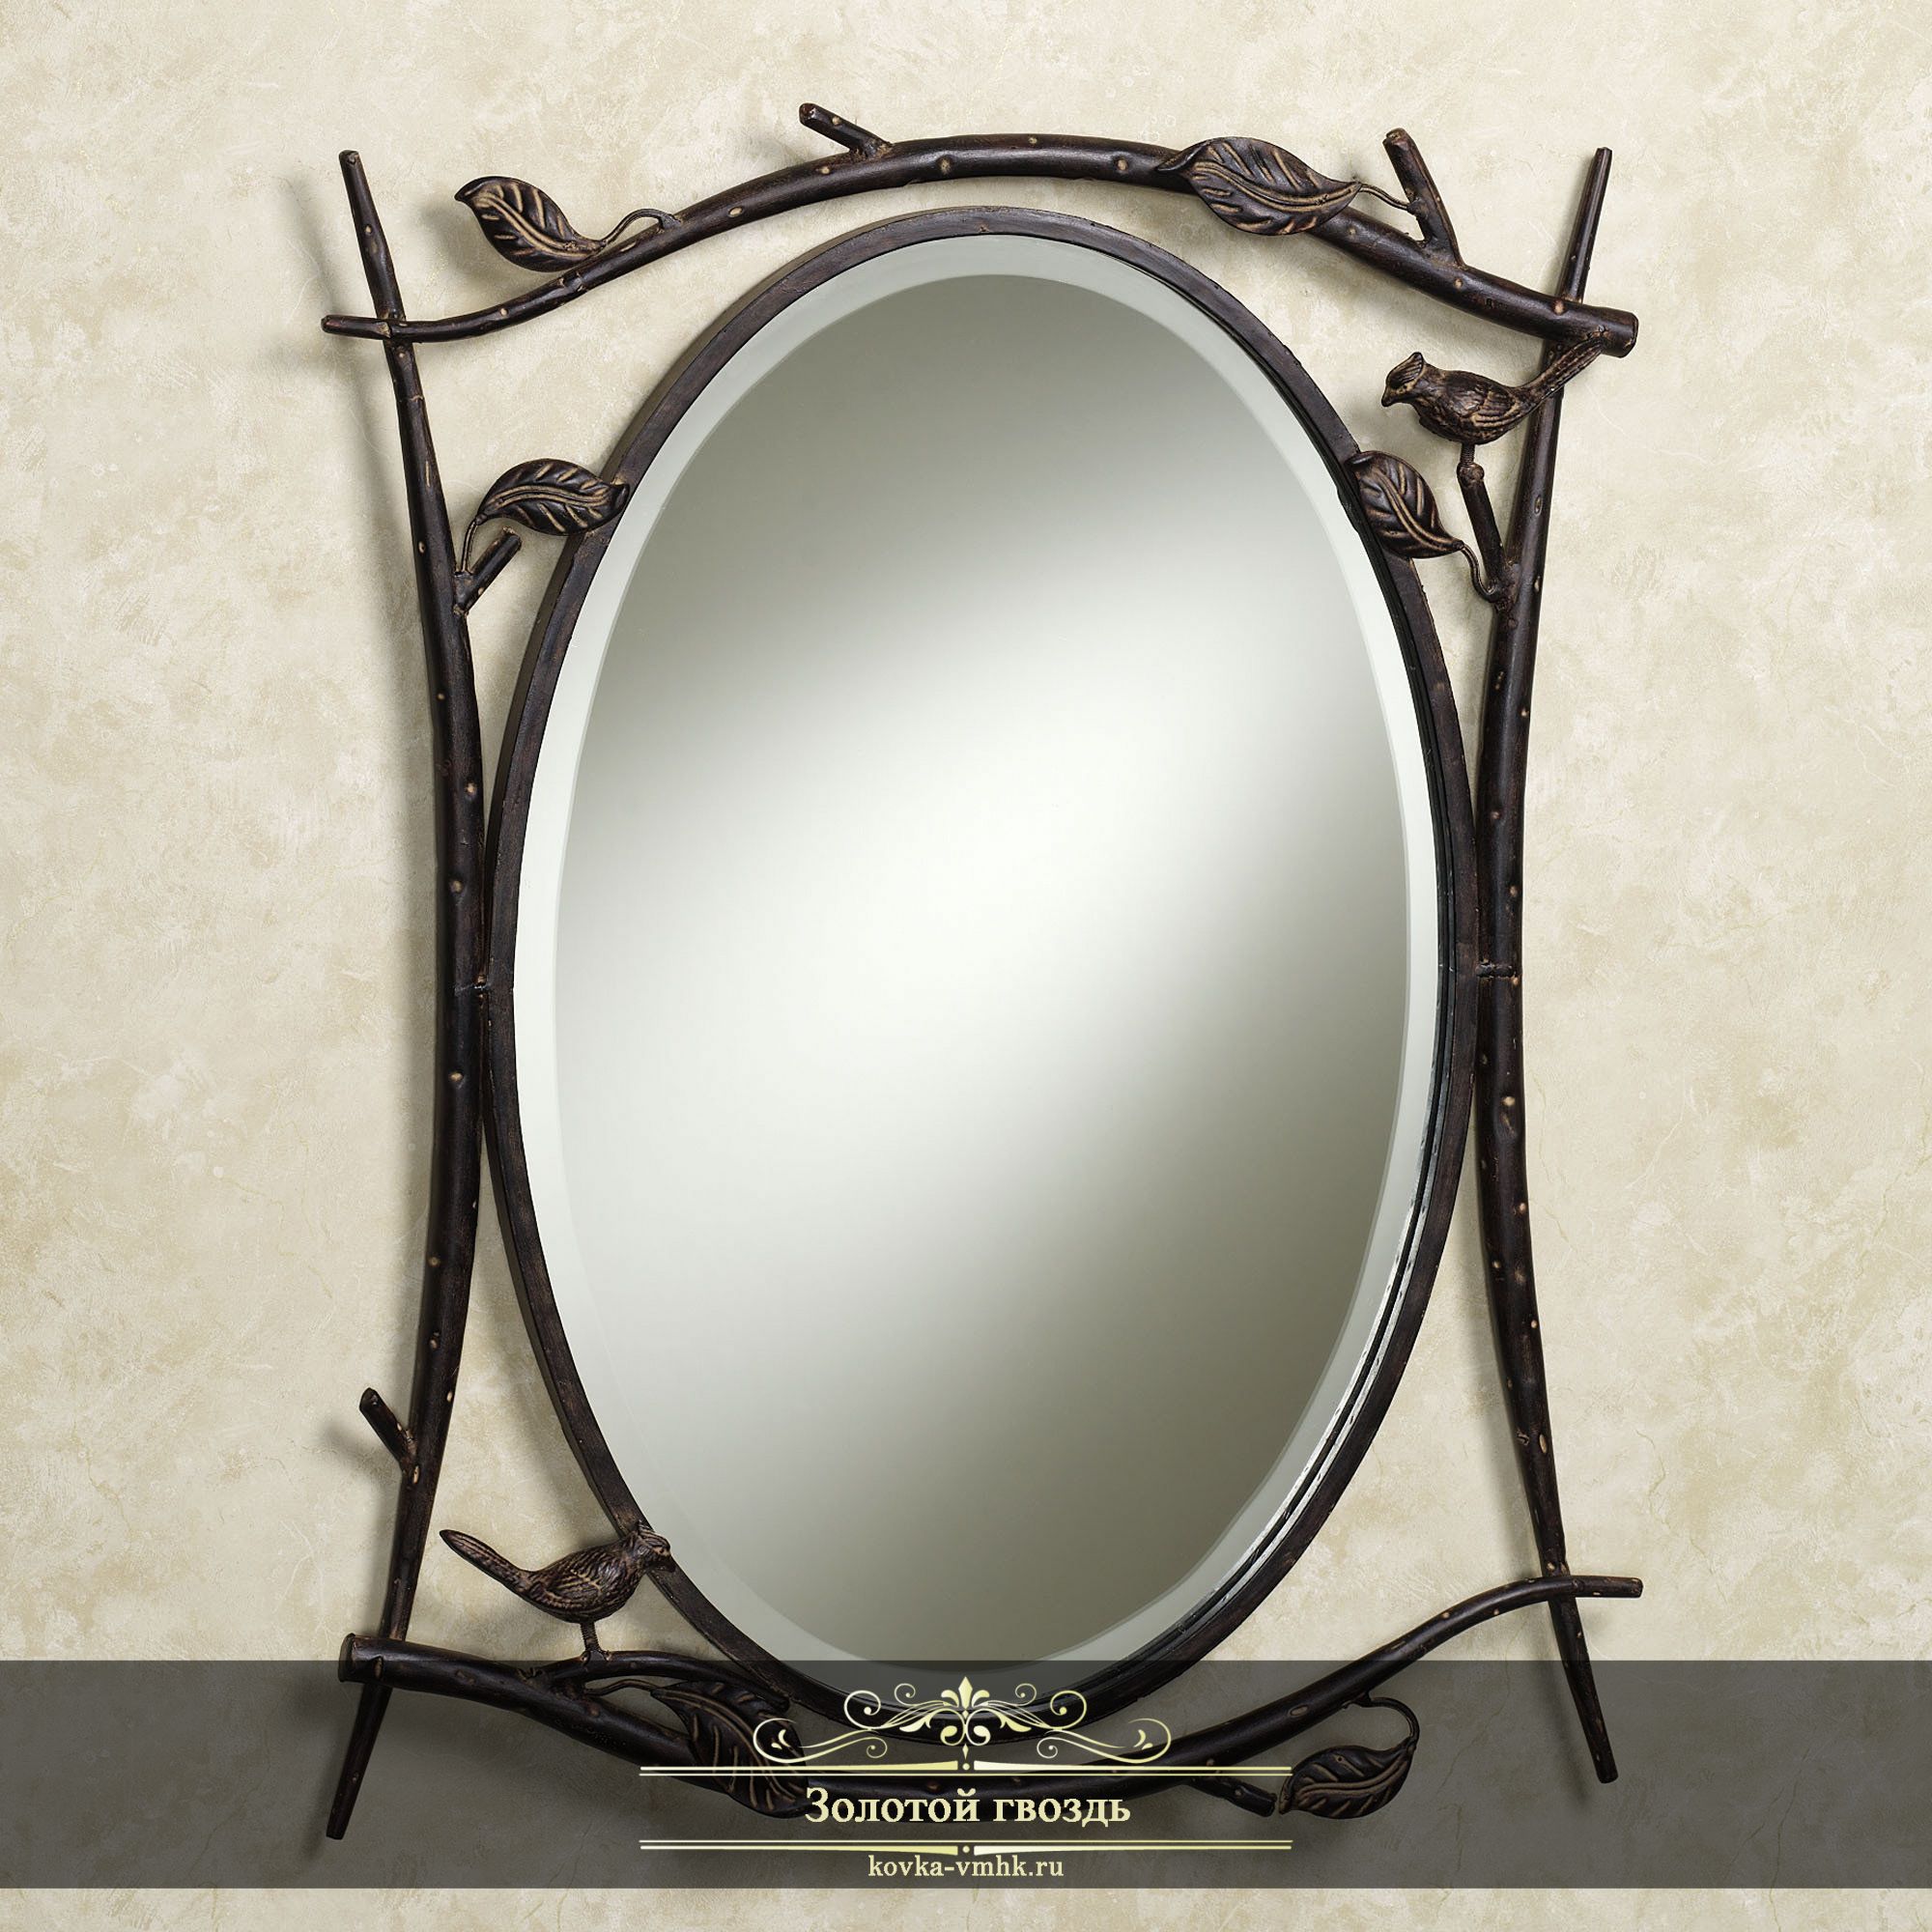 Купить зеркало в оренбурге. Кованое зеркало. Зеркало в металлической оправе. Зеркала в металлических рамах. Зеркало в металлической раме.